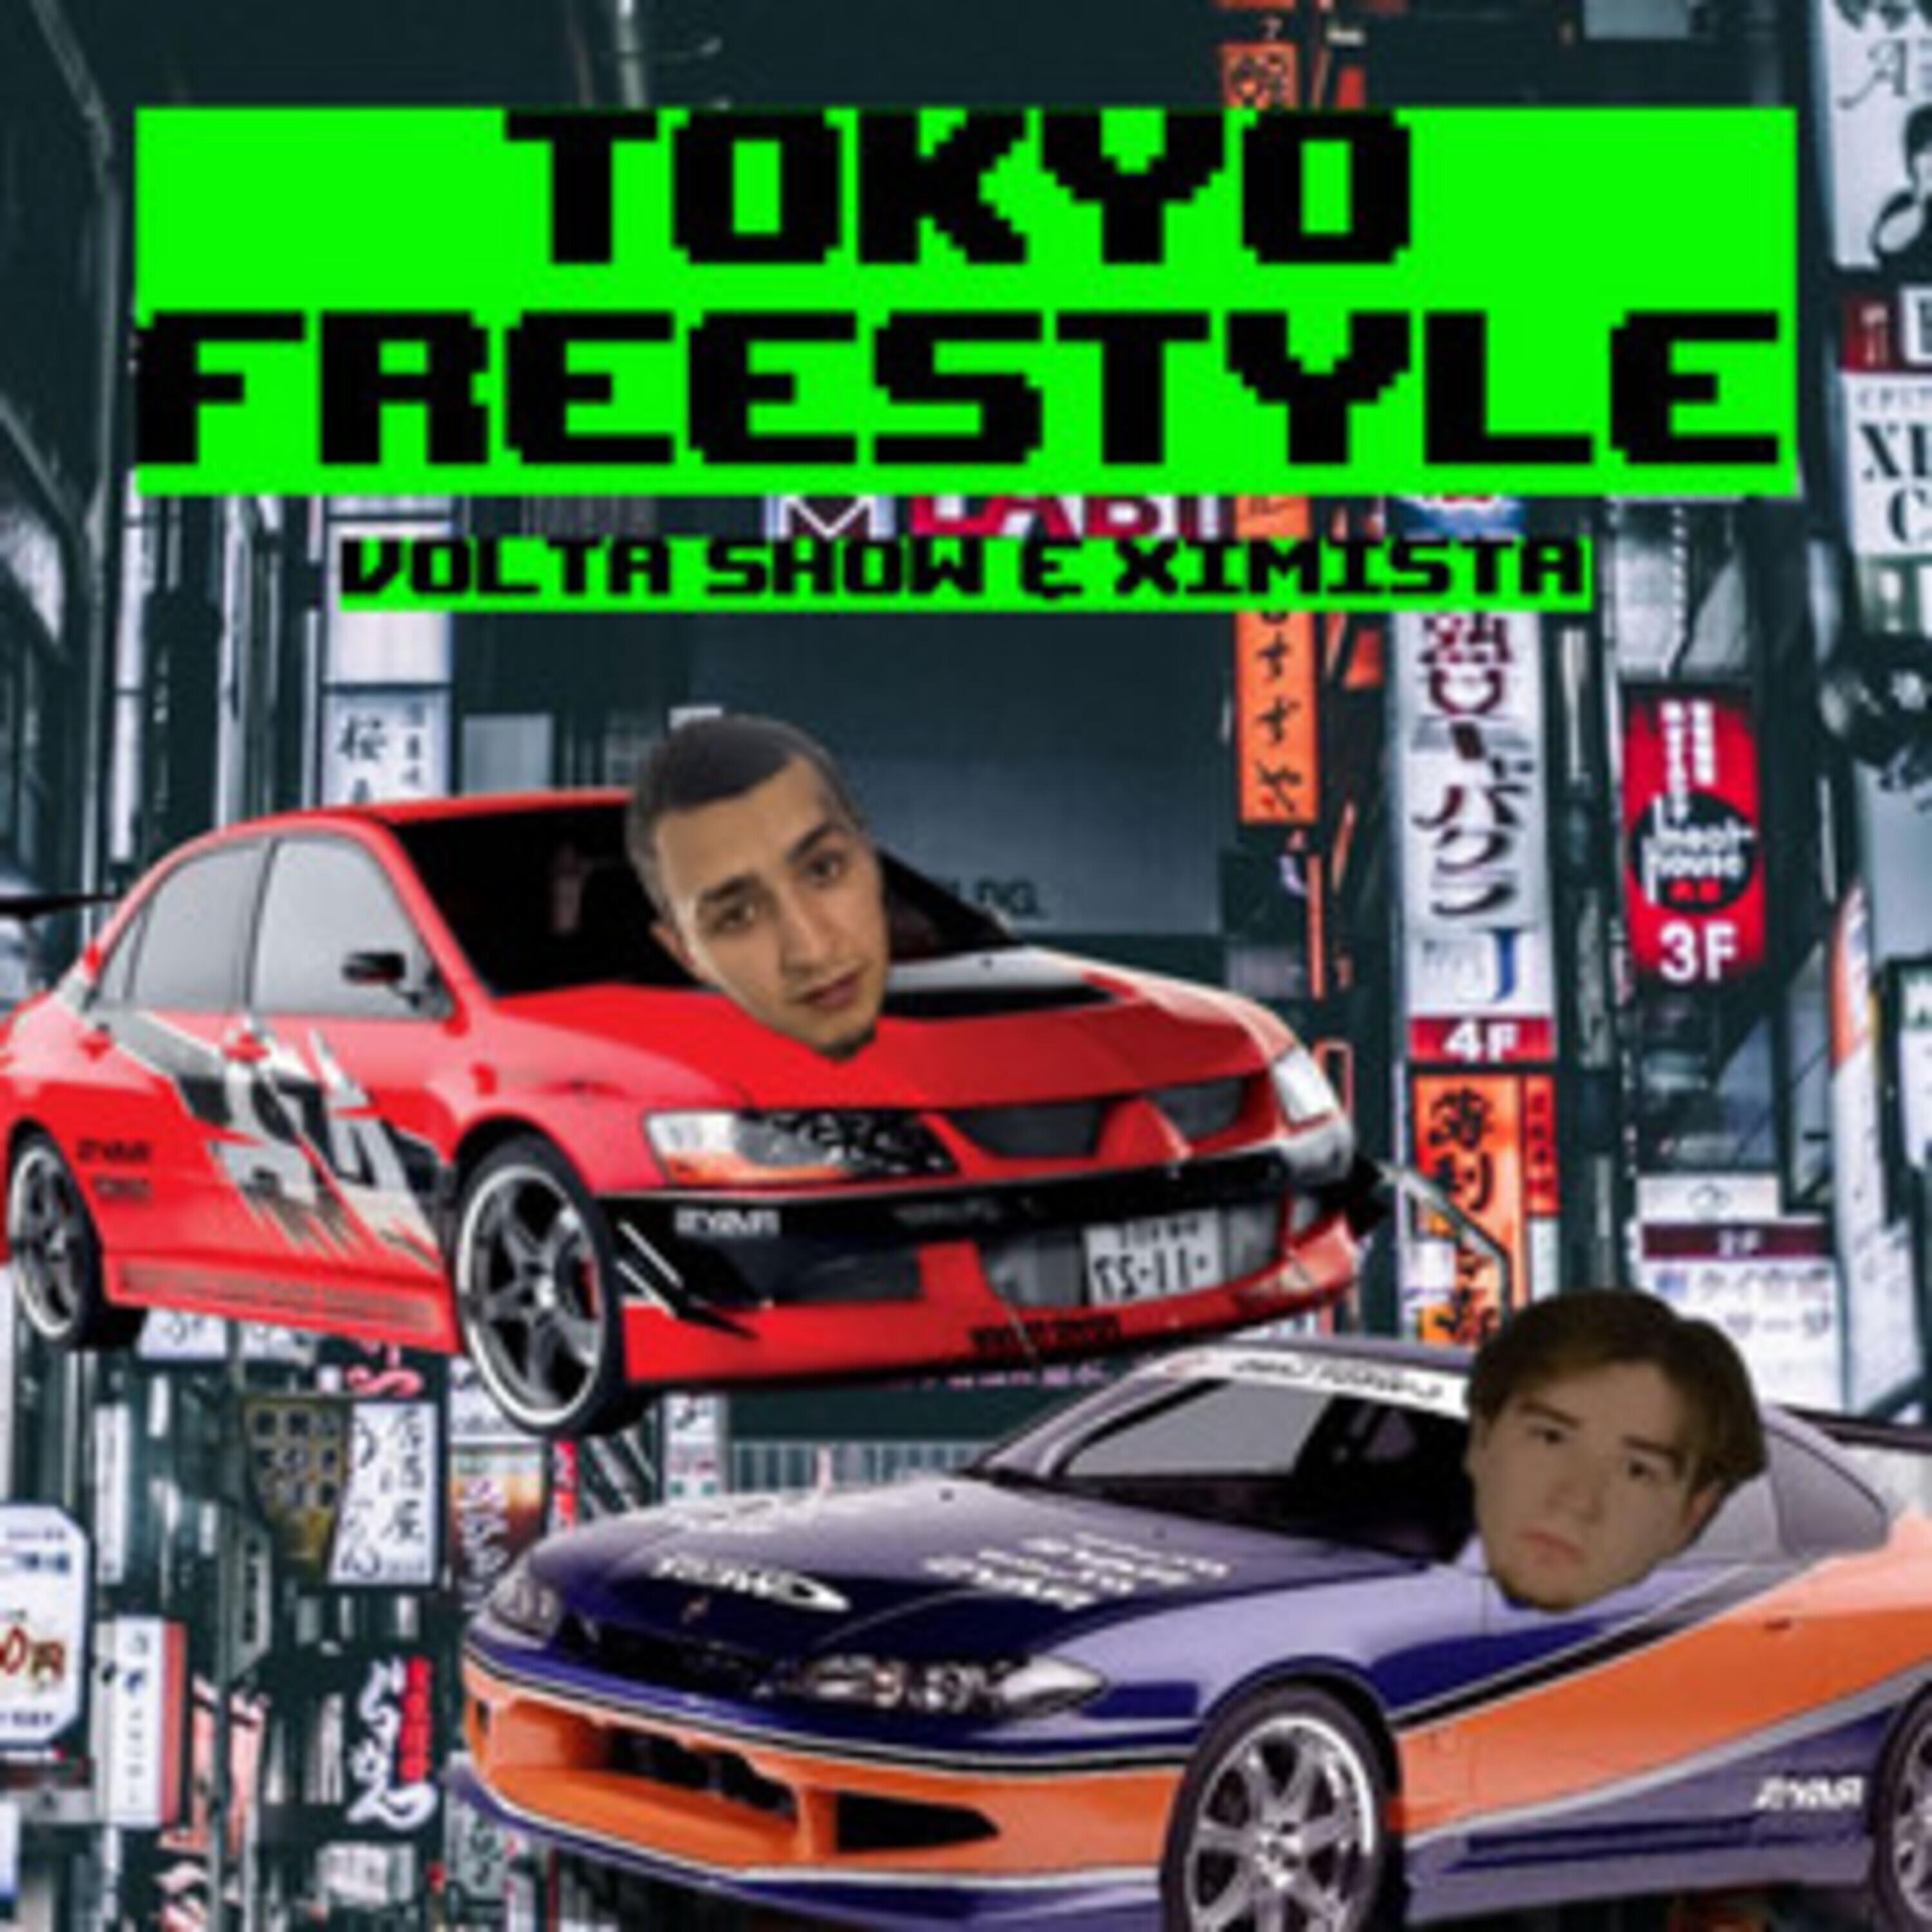 Постер альбома Tokyo Freestyle